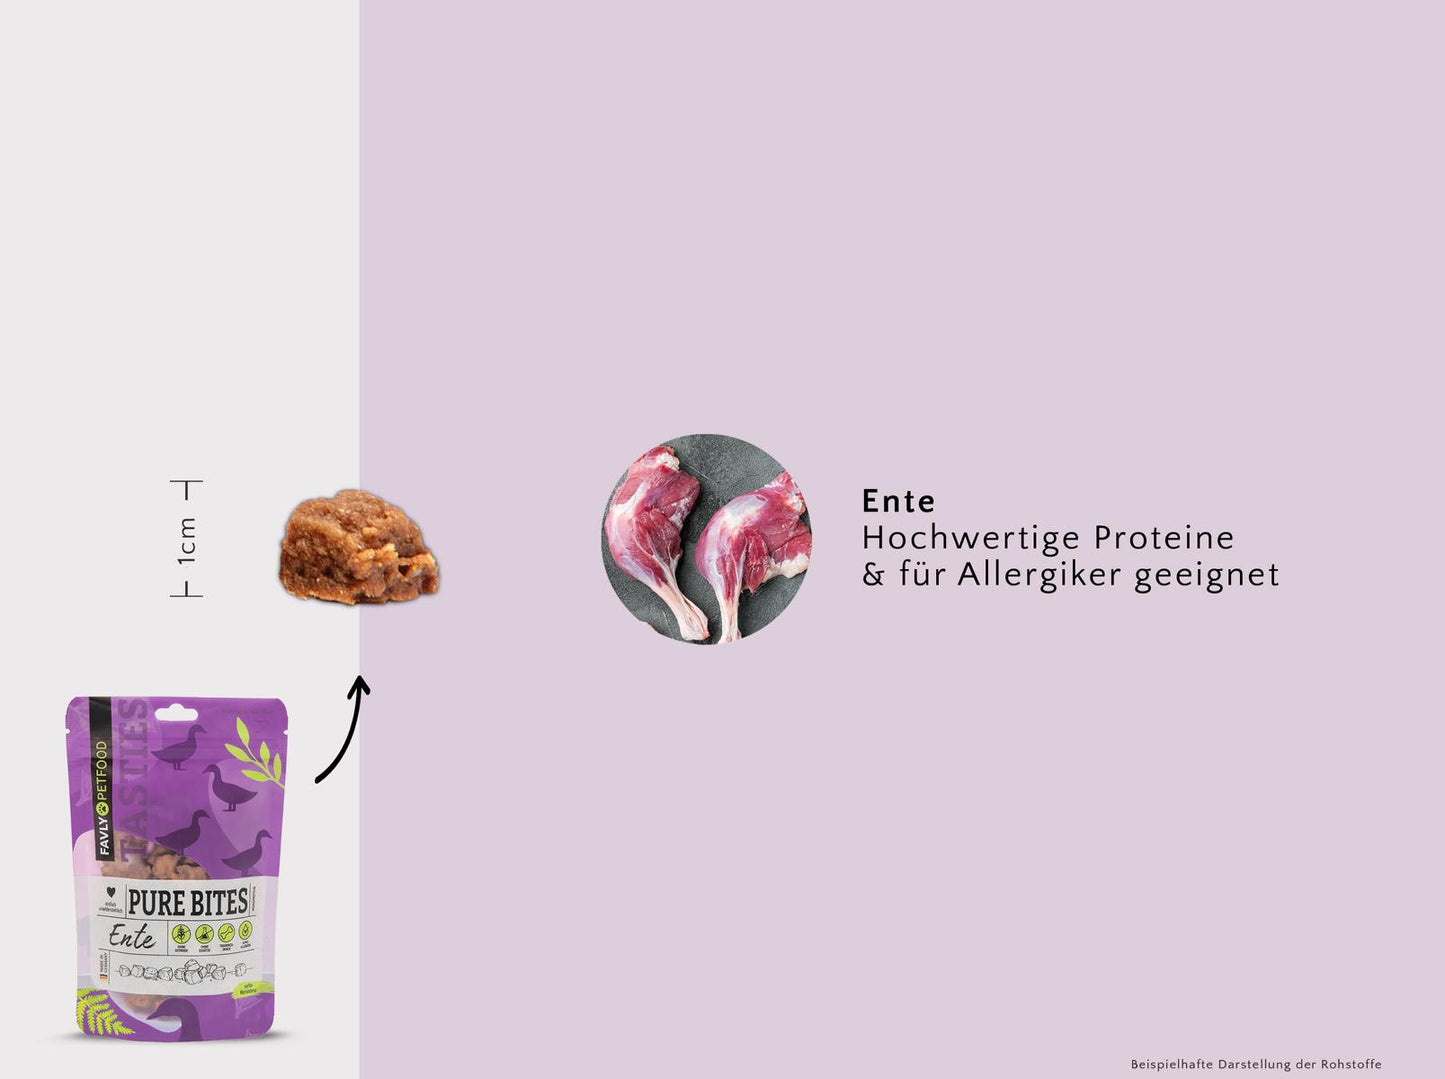 FAVLY Probierpaket "Snack it" - Unsere gesamte Snackvielfalt